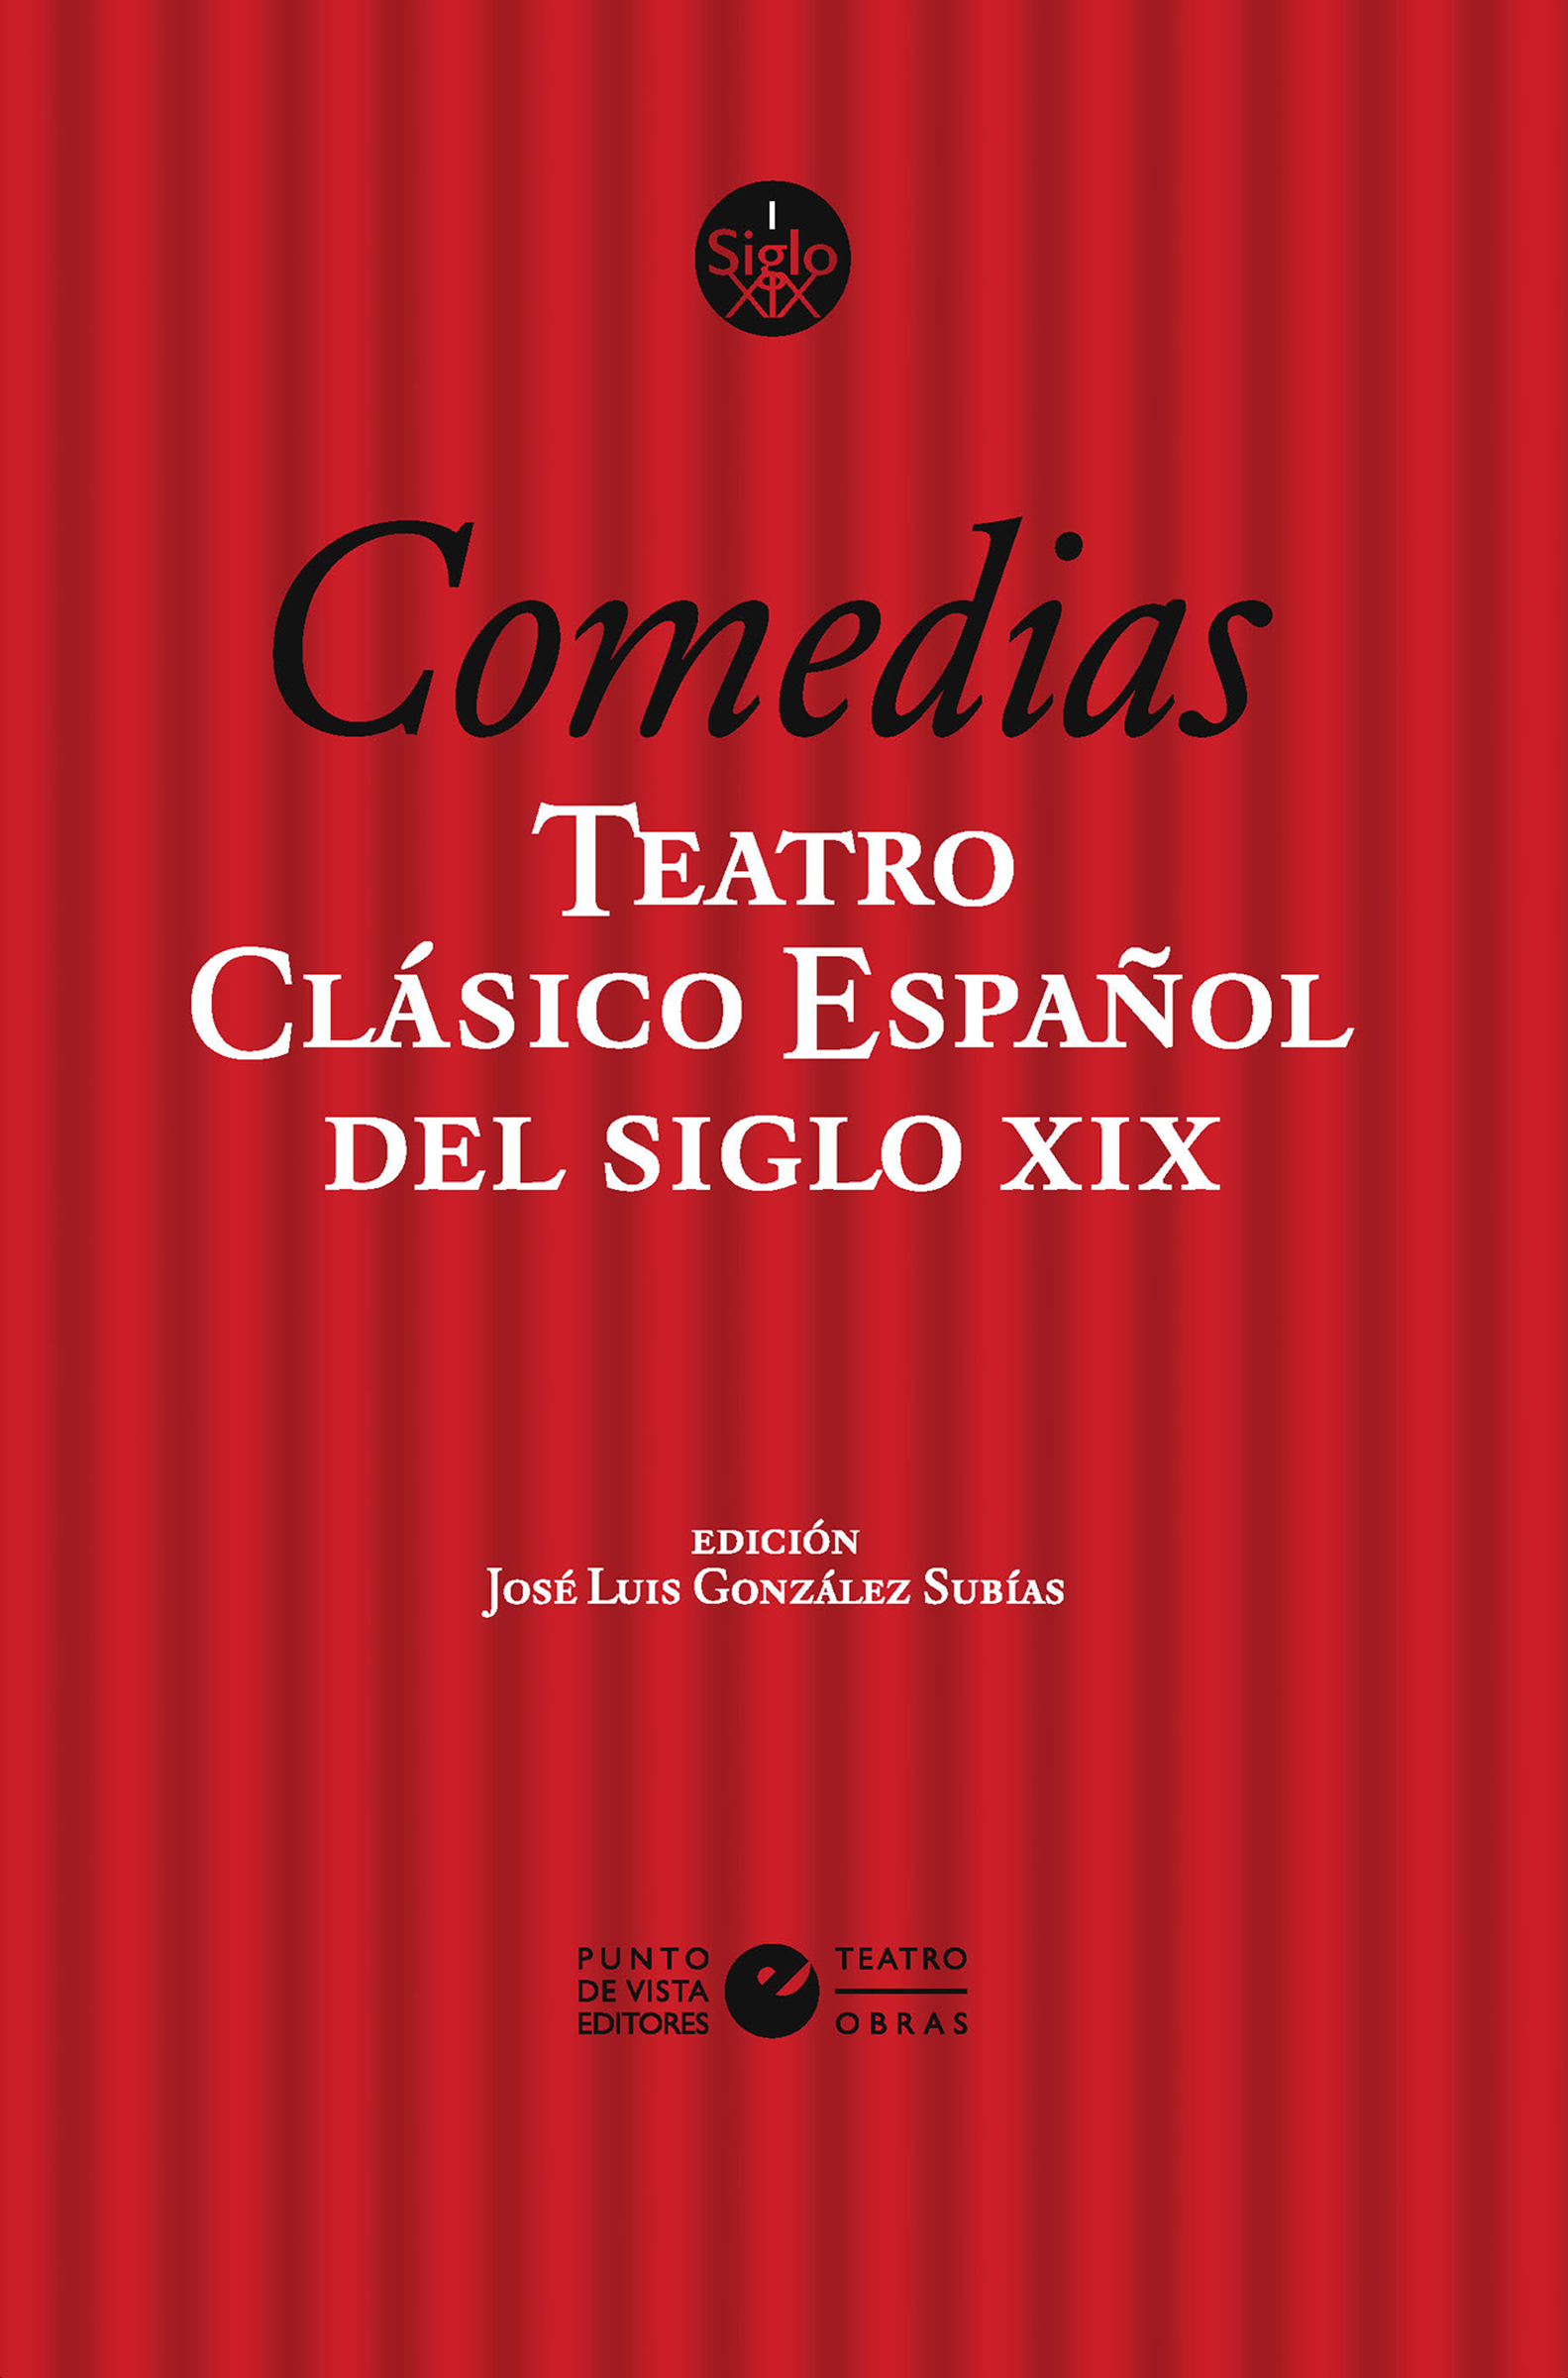 Teatro clásico español del siglo XIX